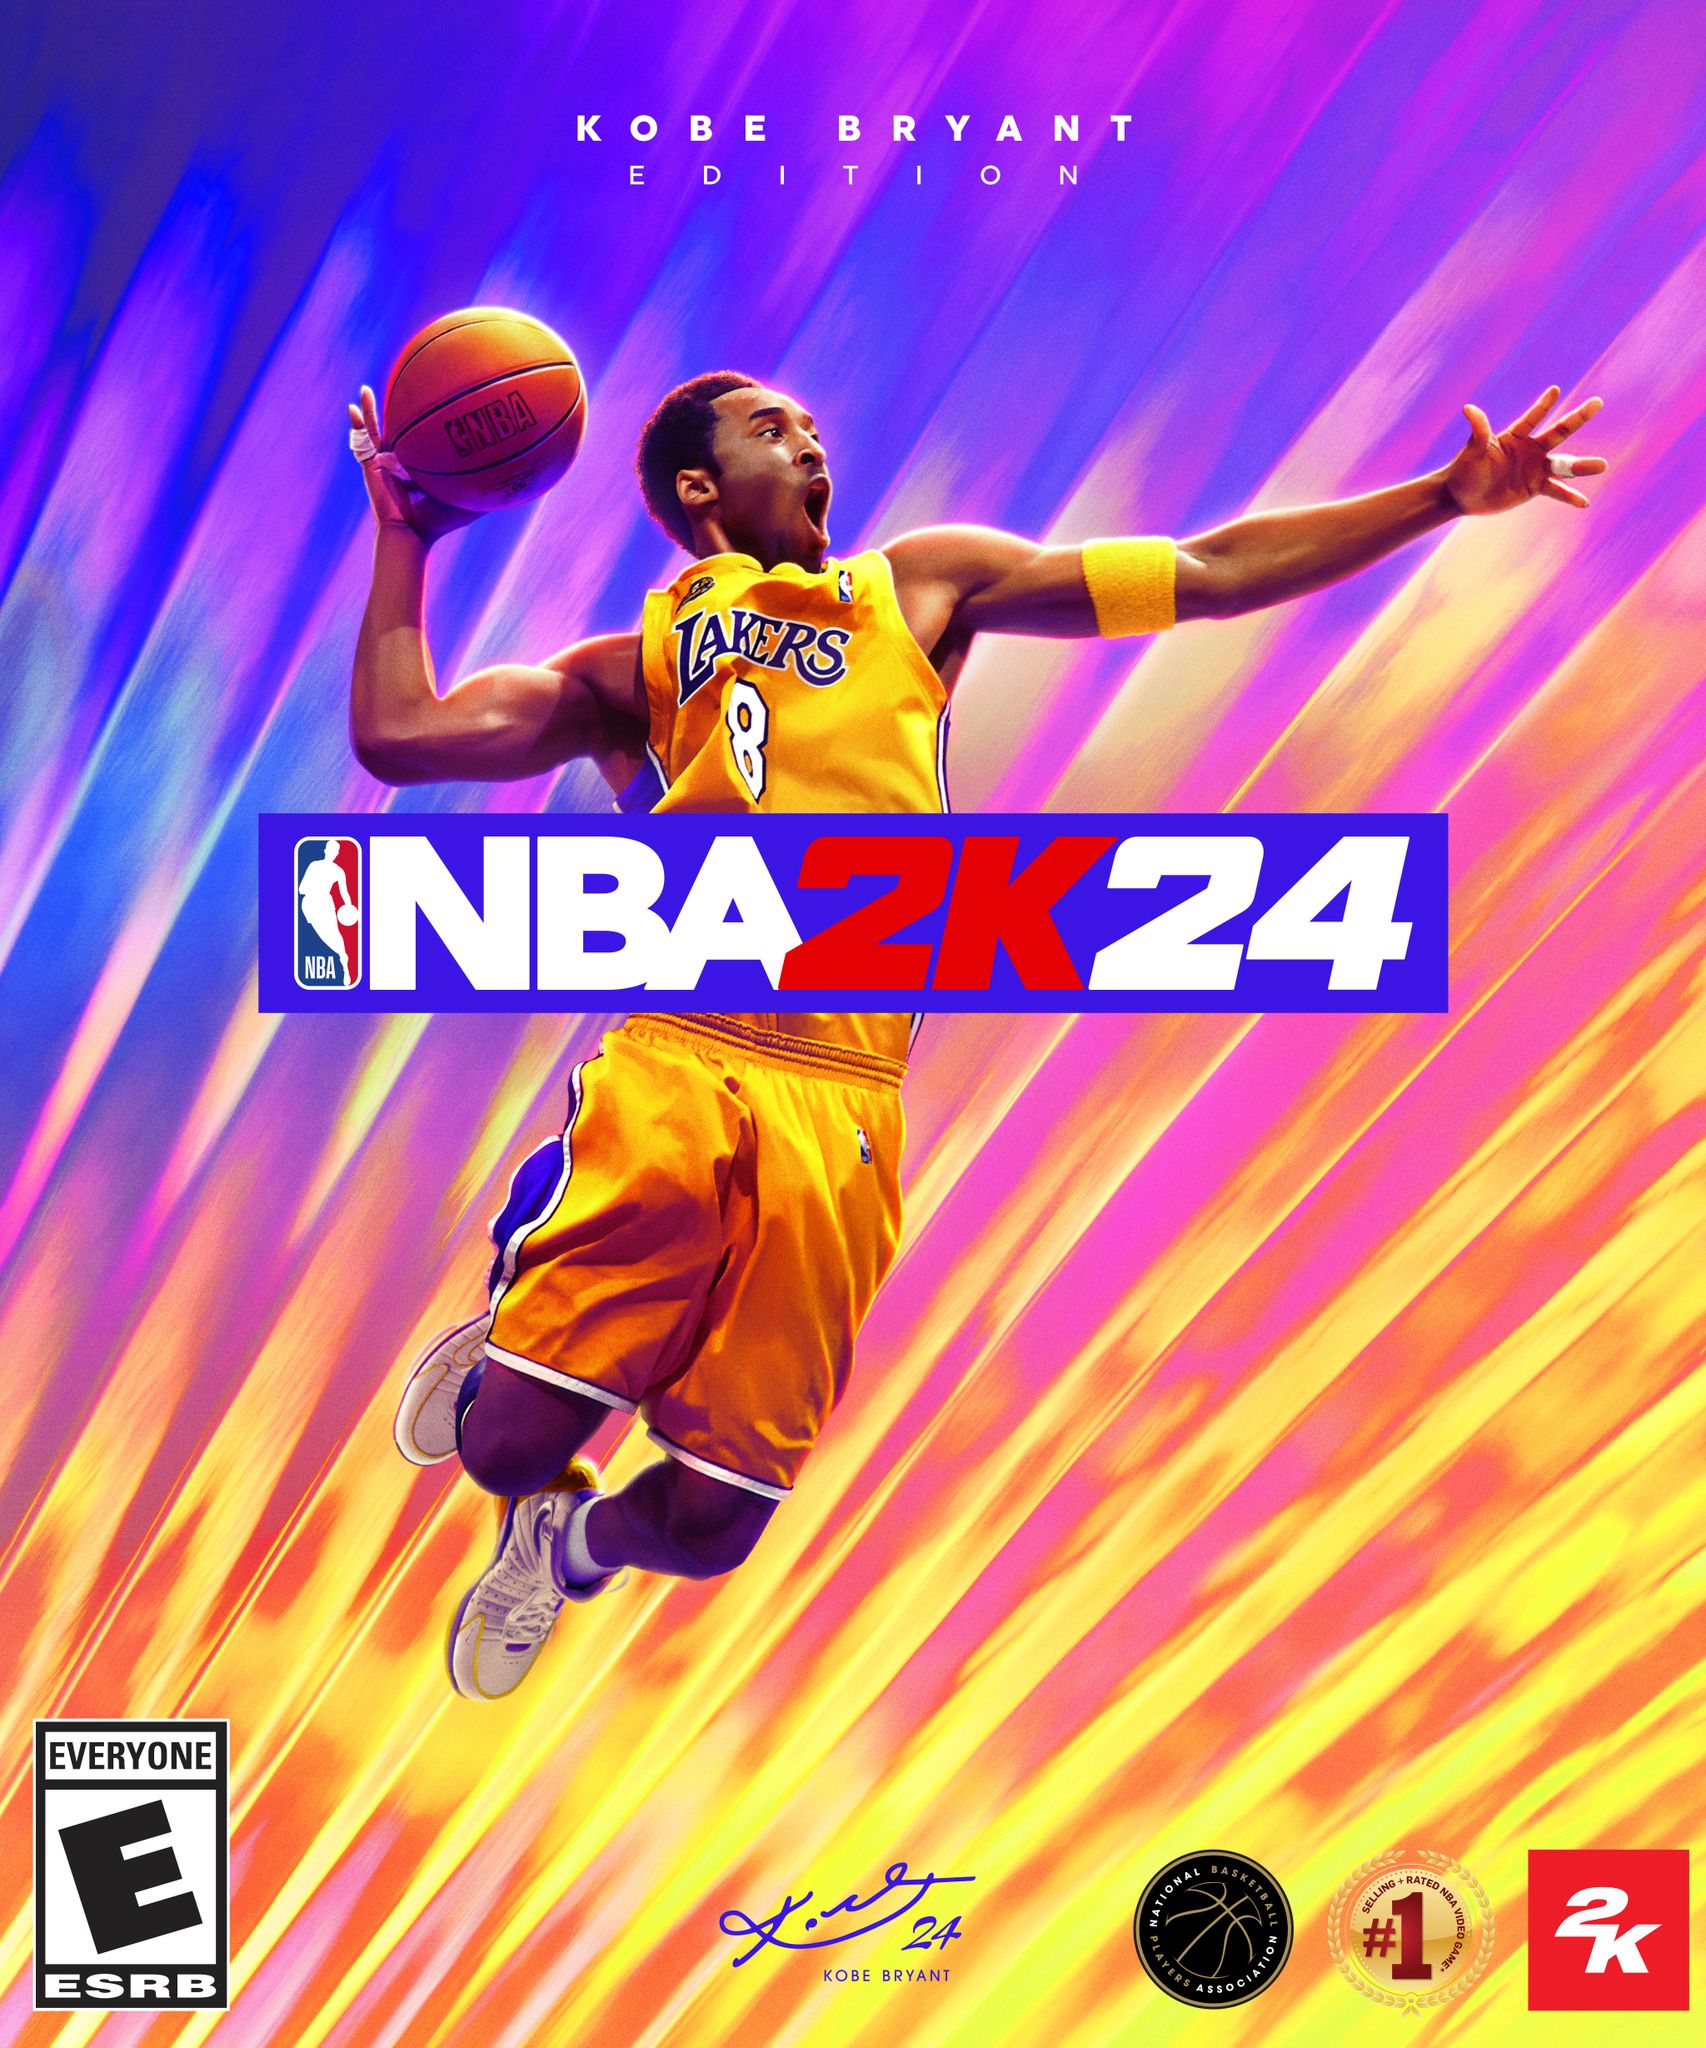 Seni sampul untuk Edisi Kobe Bryant dari NBA 2K24, menampilkan Kobe dengan kaus kandang emas Lakers melompat ke udara, lengan kanan dikokang ke belakang dengan bola di tangan.